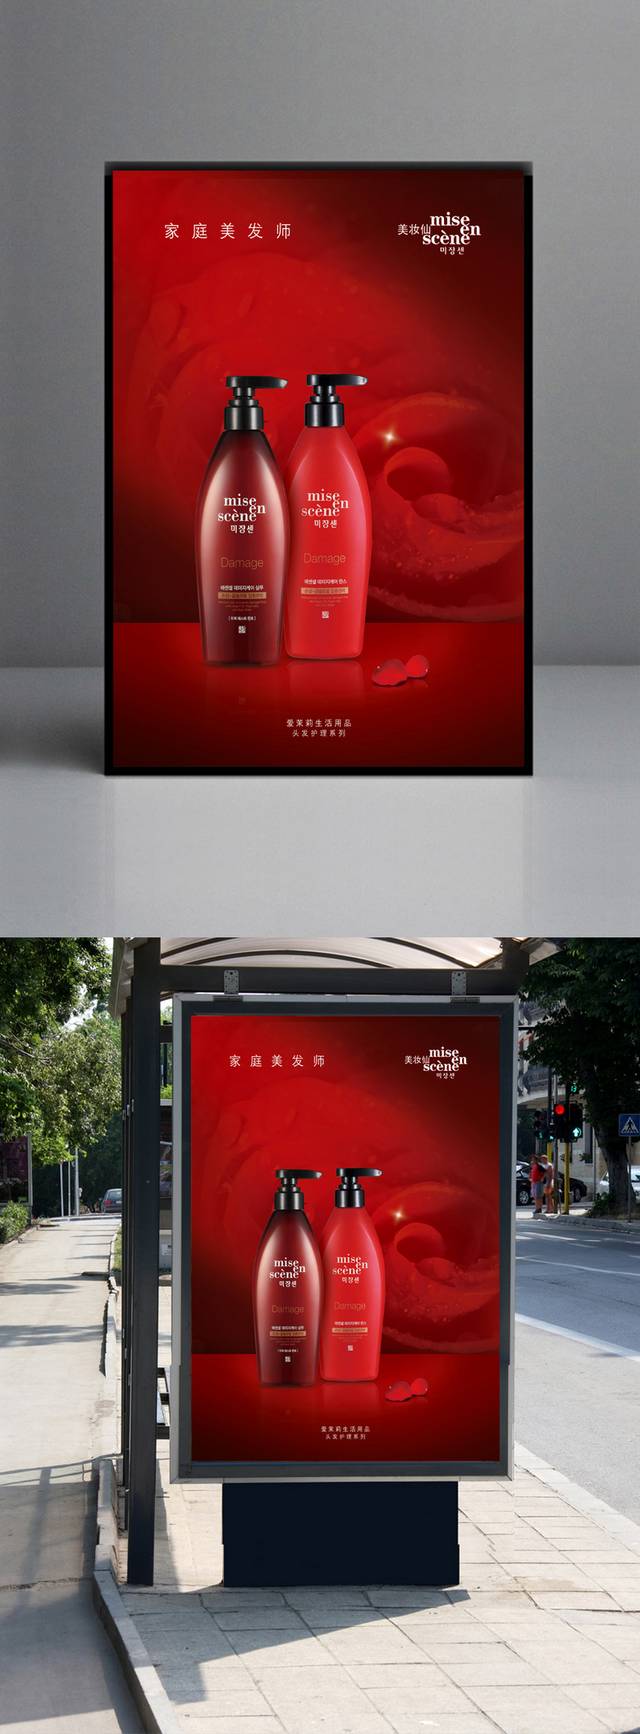 高档日用品洗发水广告